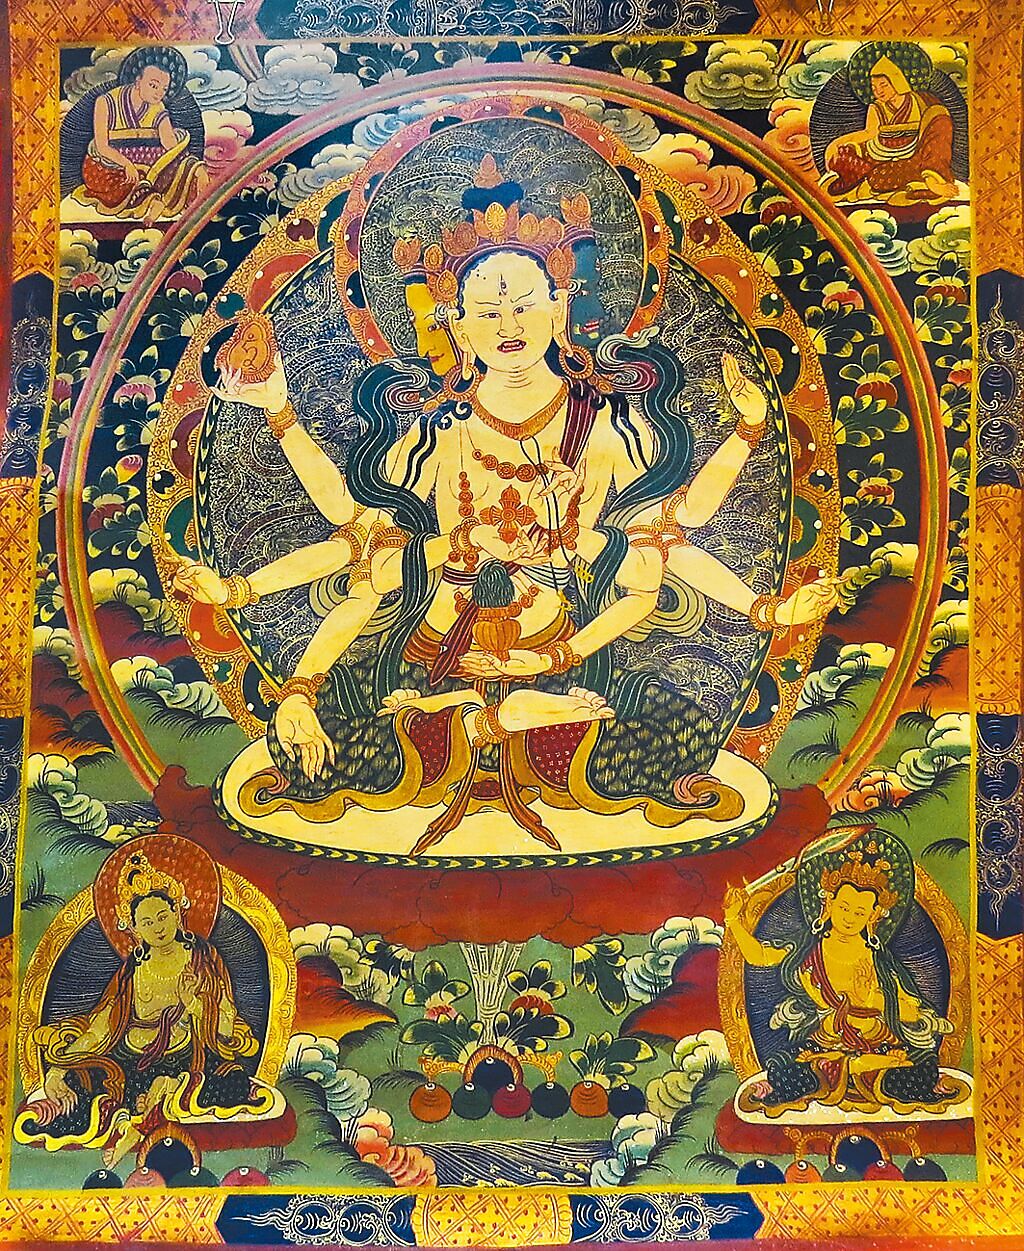 藏族绘画唐卡艺术的发展以及唐卡绘画的派别 - 知乎